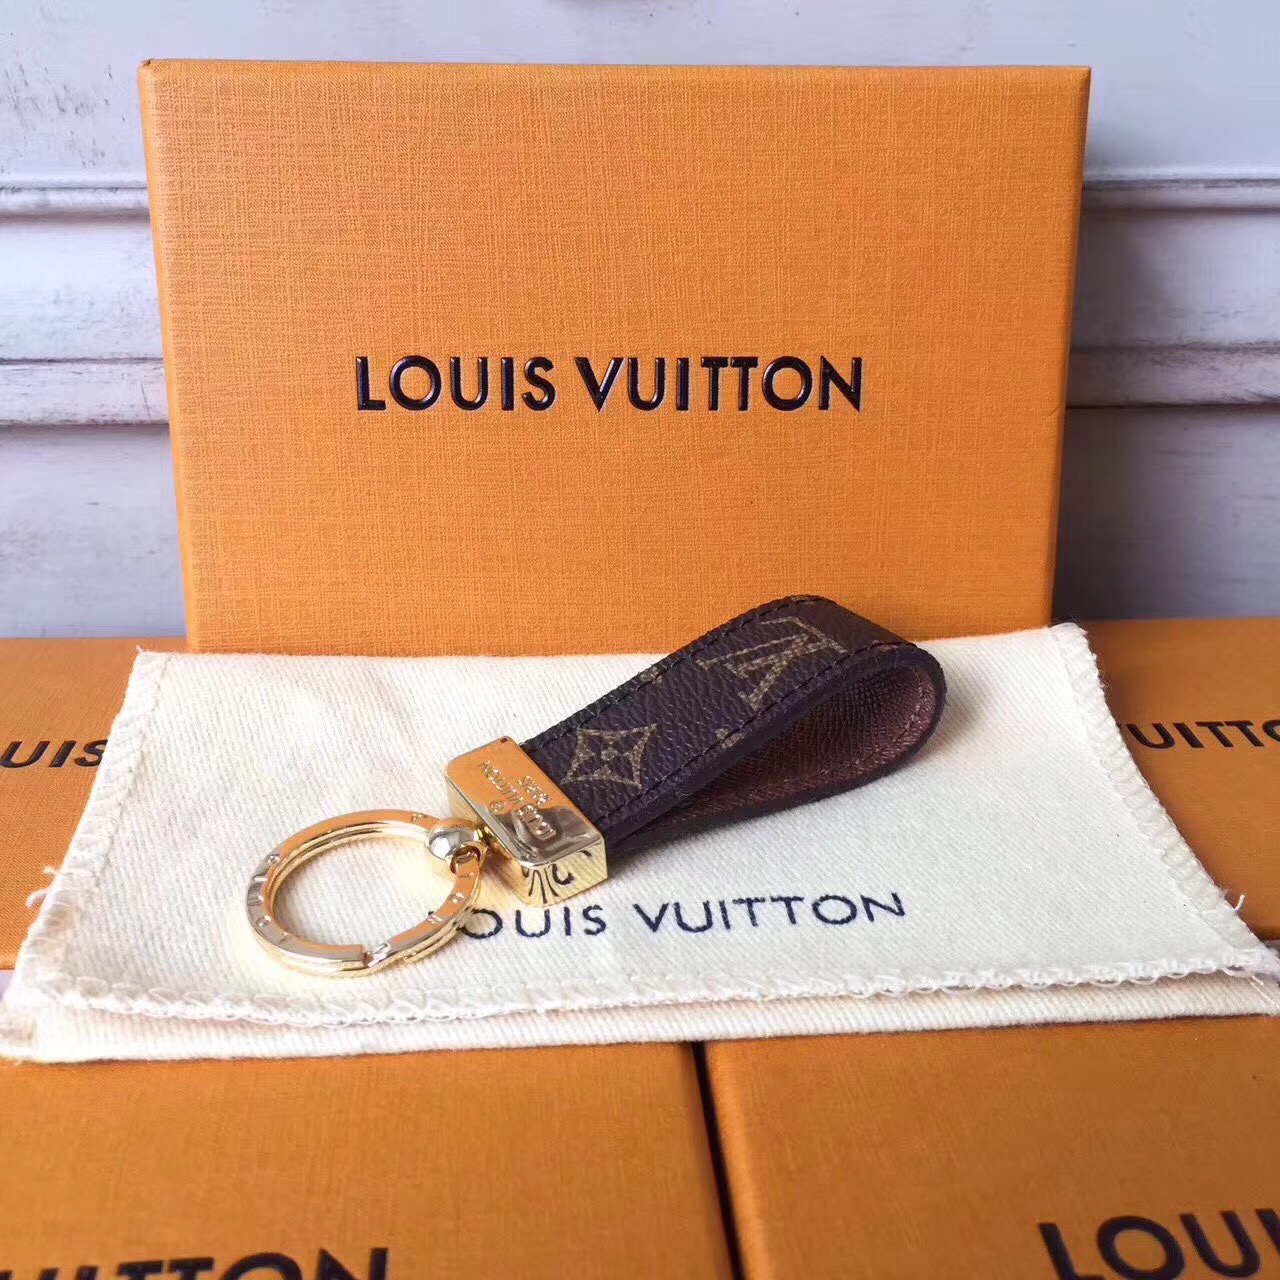 Louis Vuitton Key chain-AC50175 [AC50175] - $75.00USD : USPURSE, mirror ...